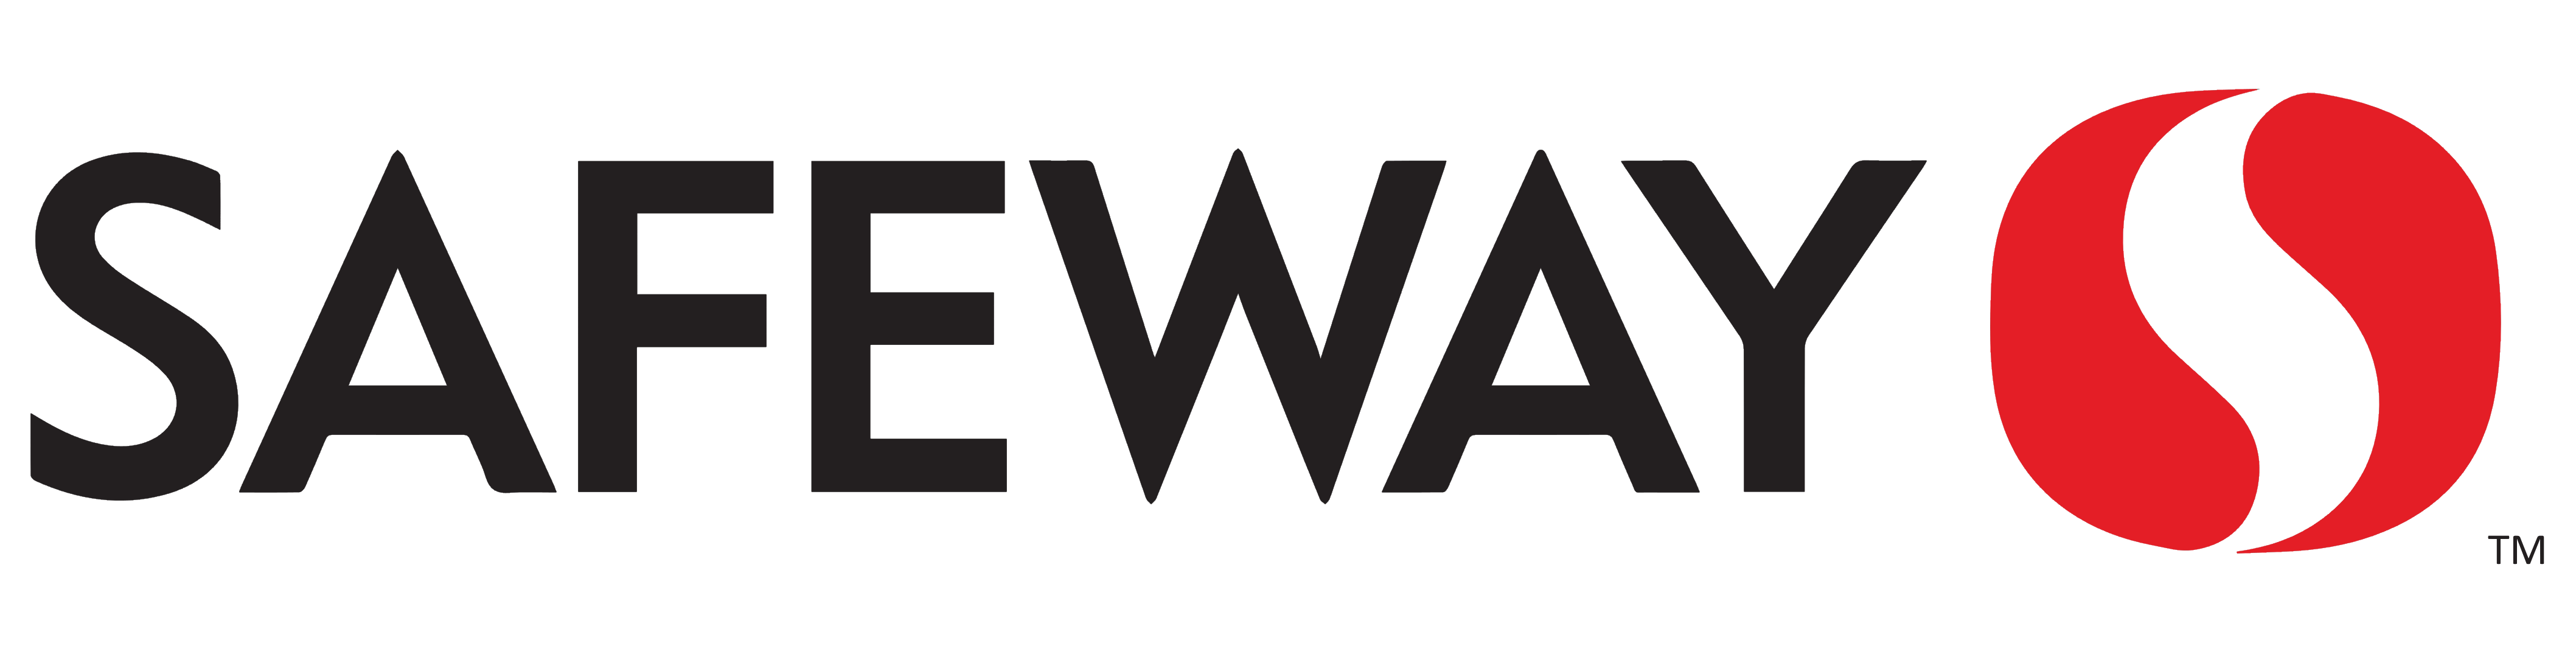 Safeway logo, logotype